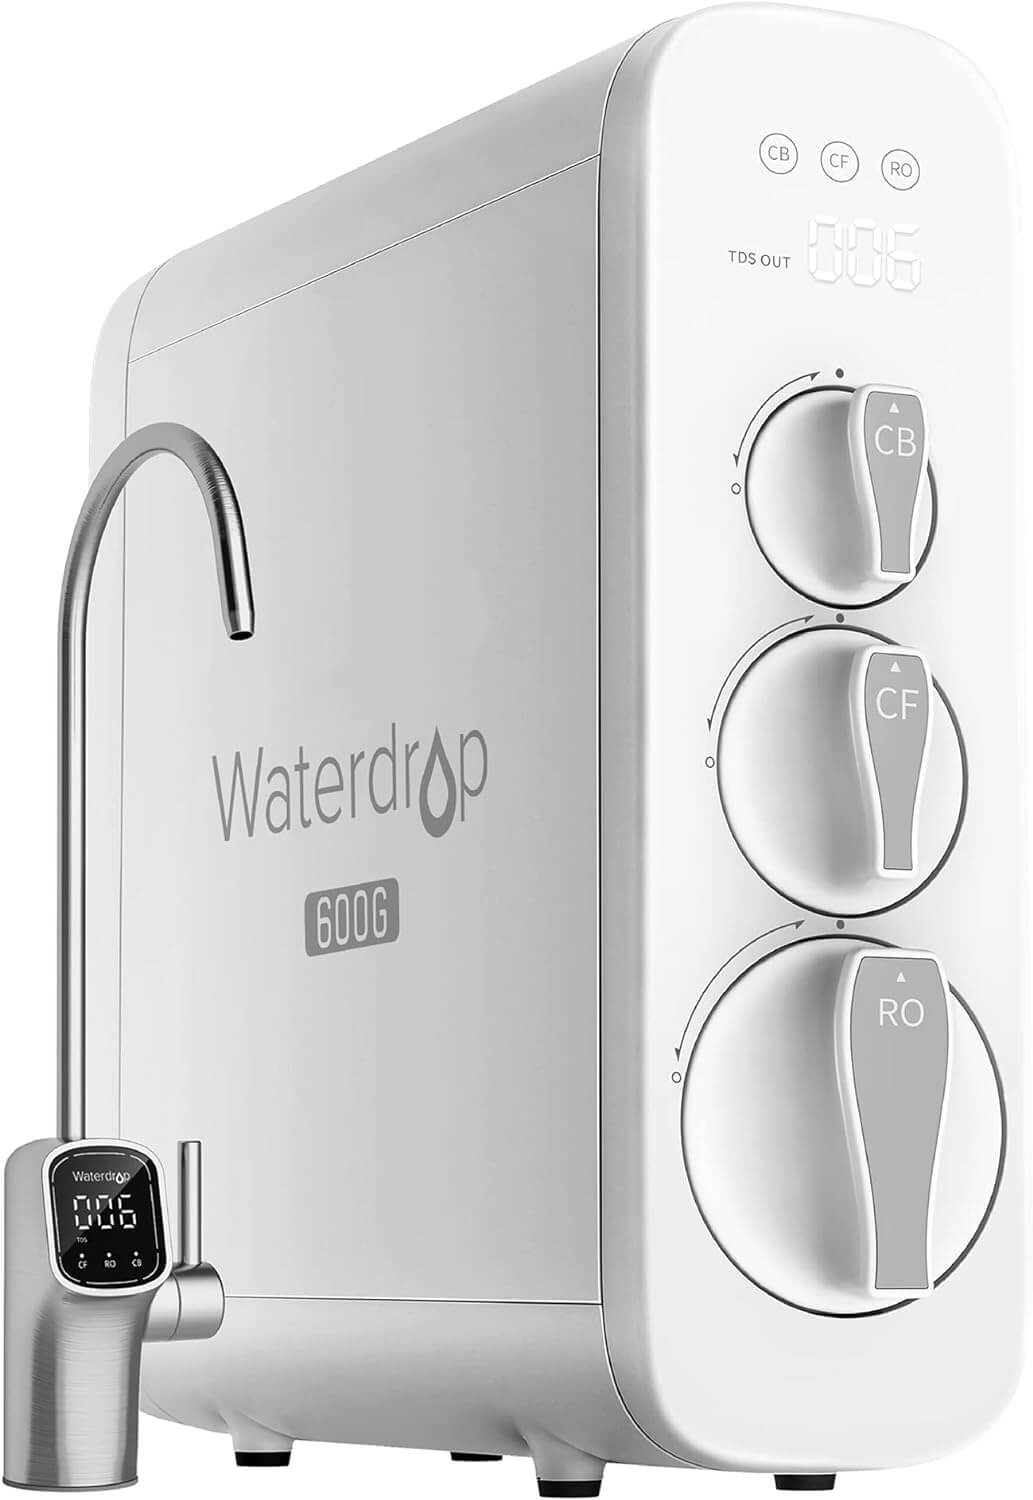 Waterdrop G3 Reverse Osmosis System